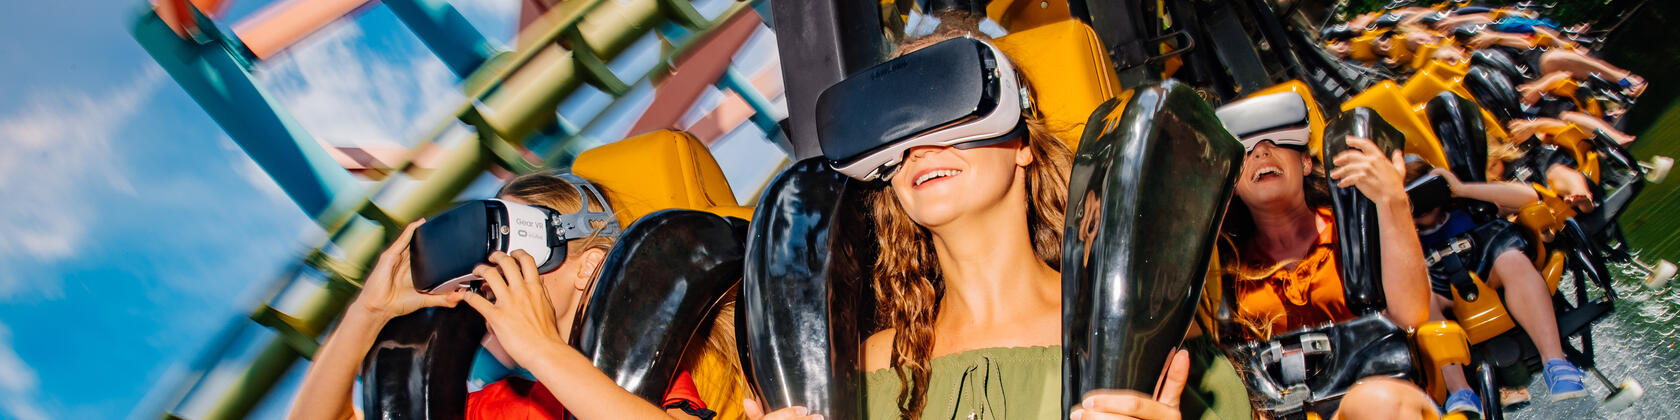 mensen in de rollercoaster dreamcatcher in Bobbejaanland, een rollercoaster van 600 m lang waarbij je ook een virtual reality bril moet opzetten